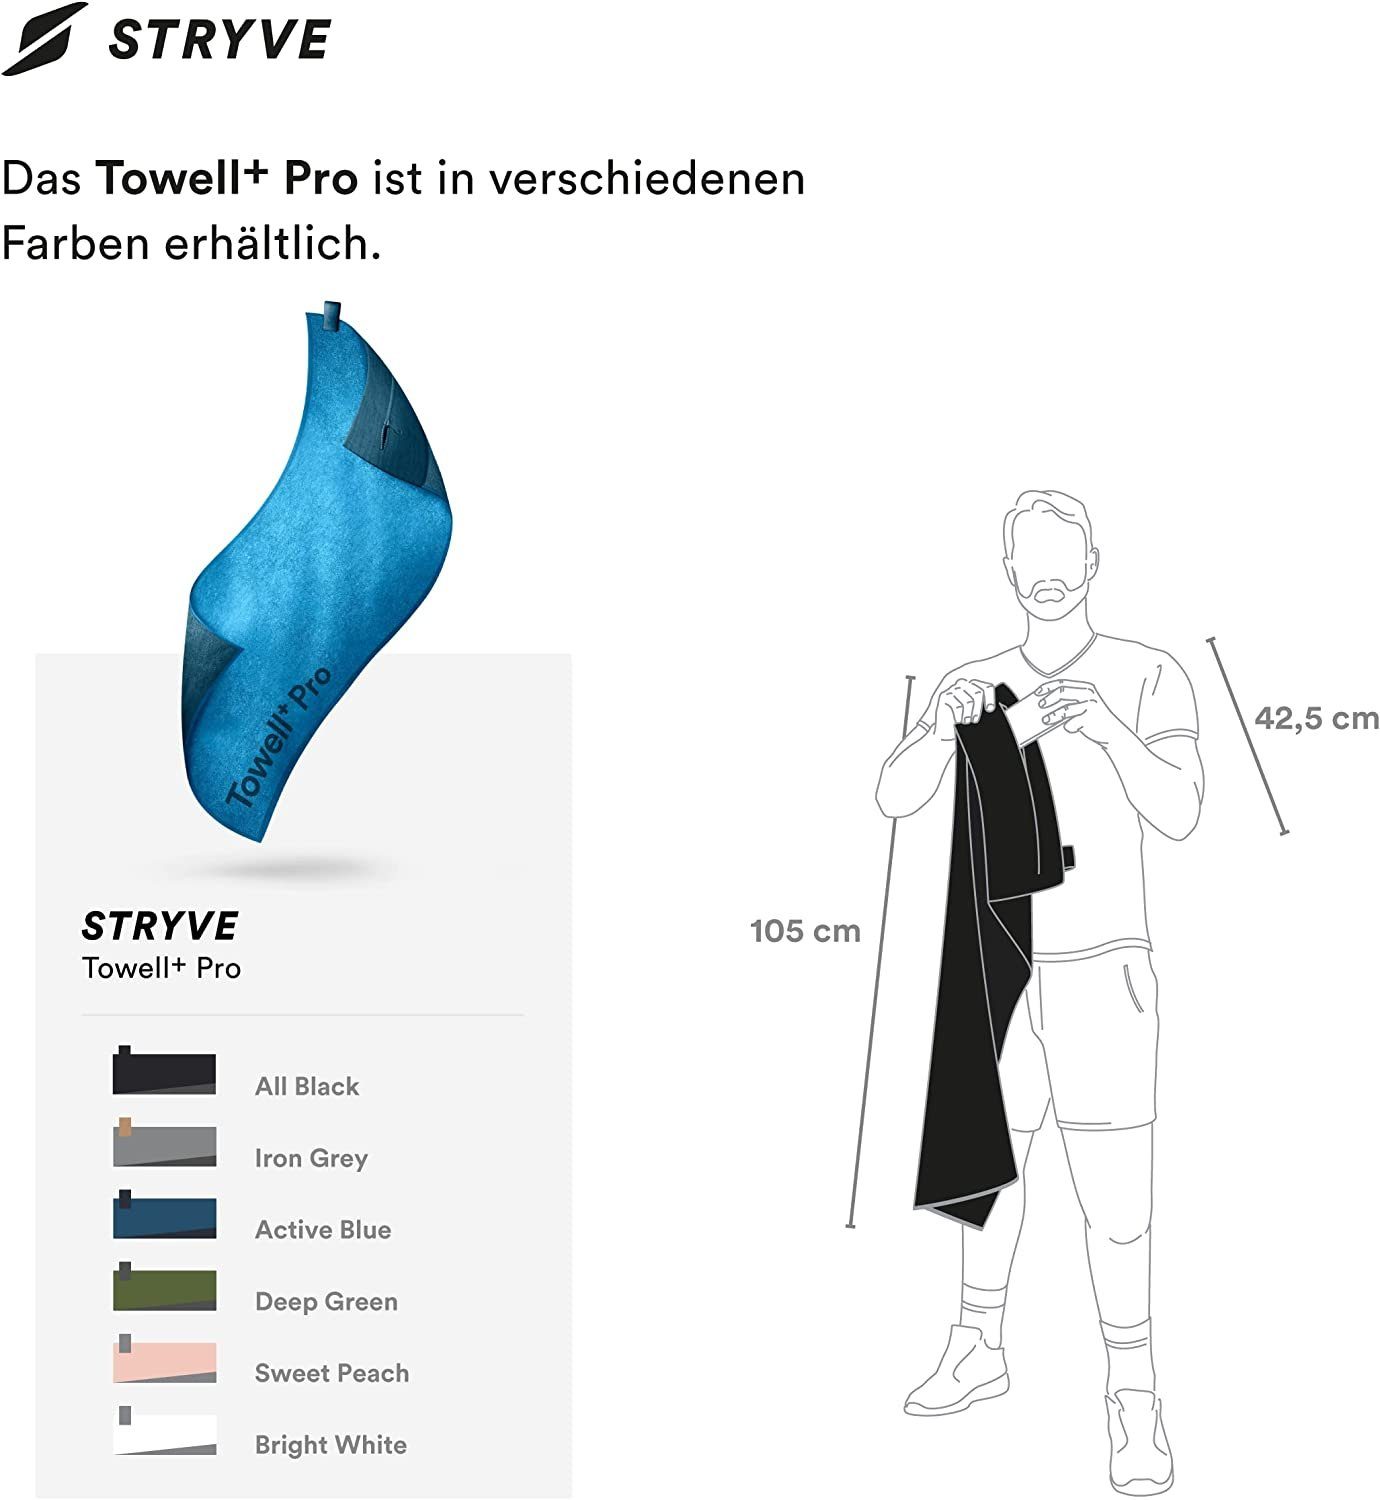 Pro Stryve Tasche Towell mit 42,5cm), Rutschschutz Magnet, x + Sporthandtuch + Blue Active (105